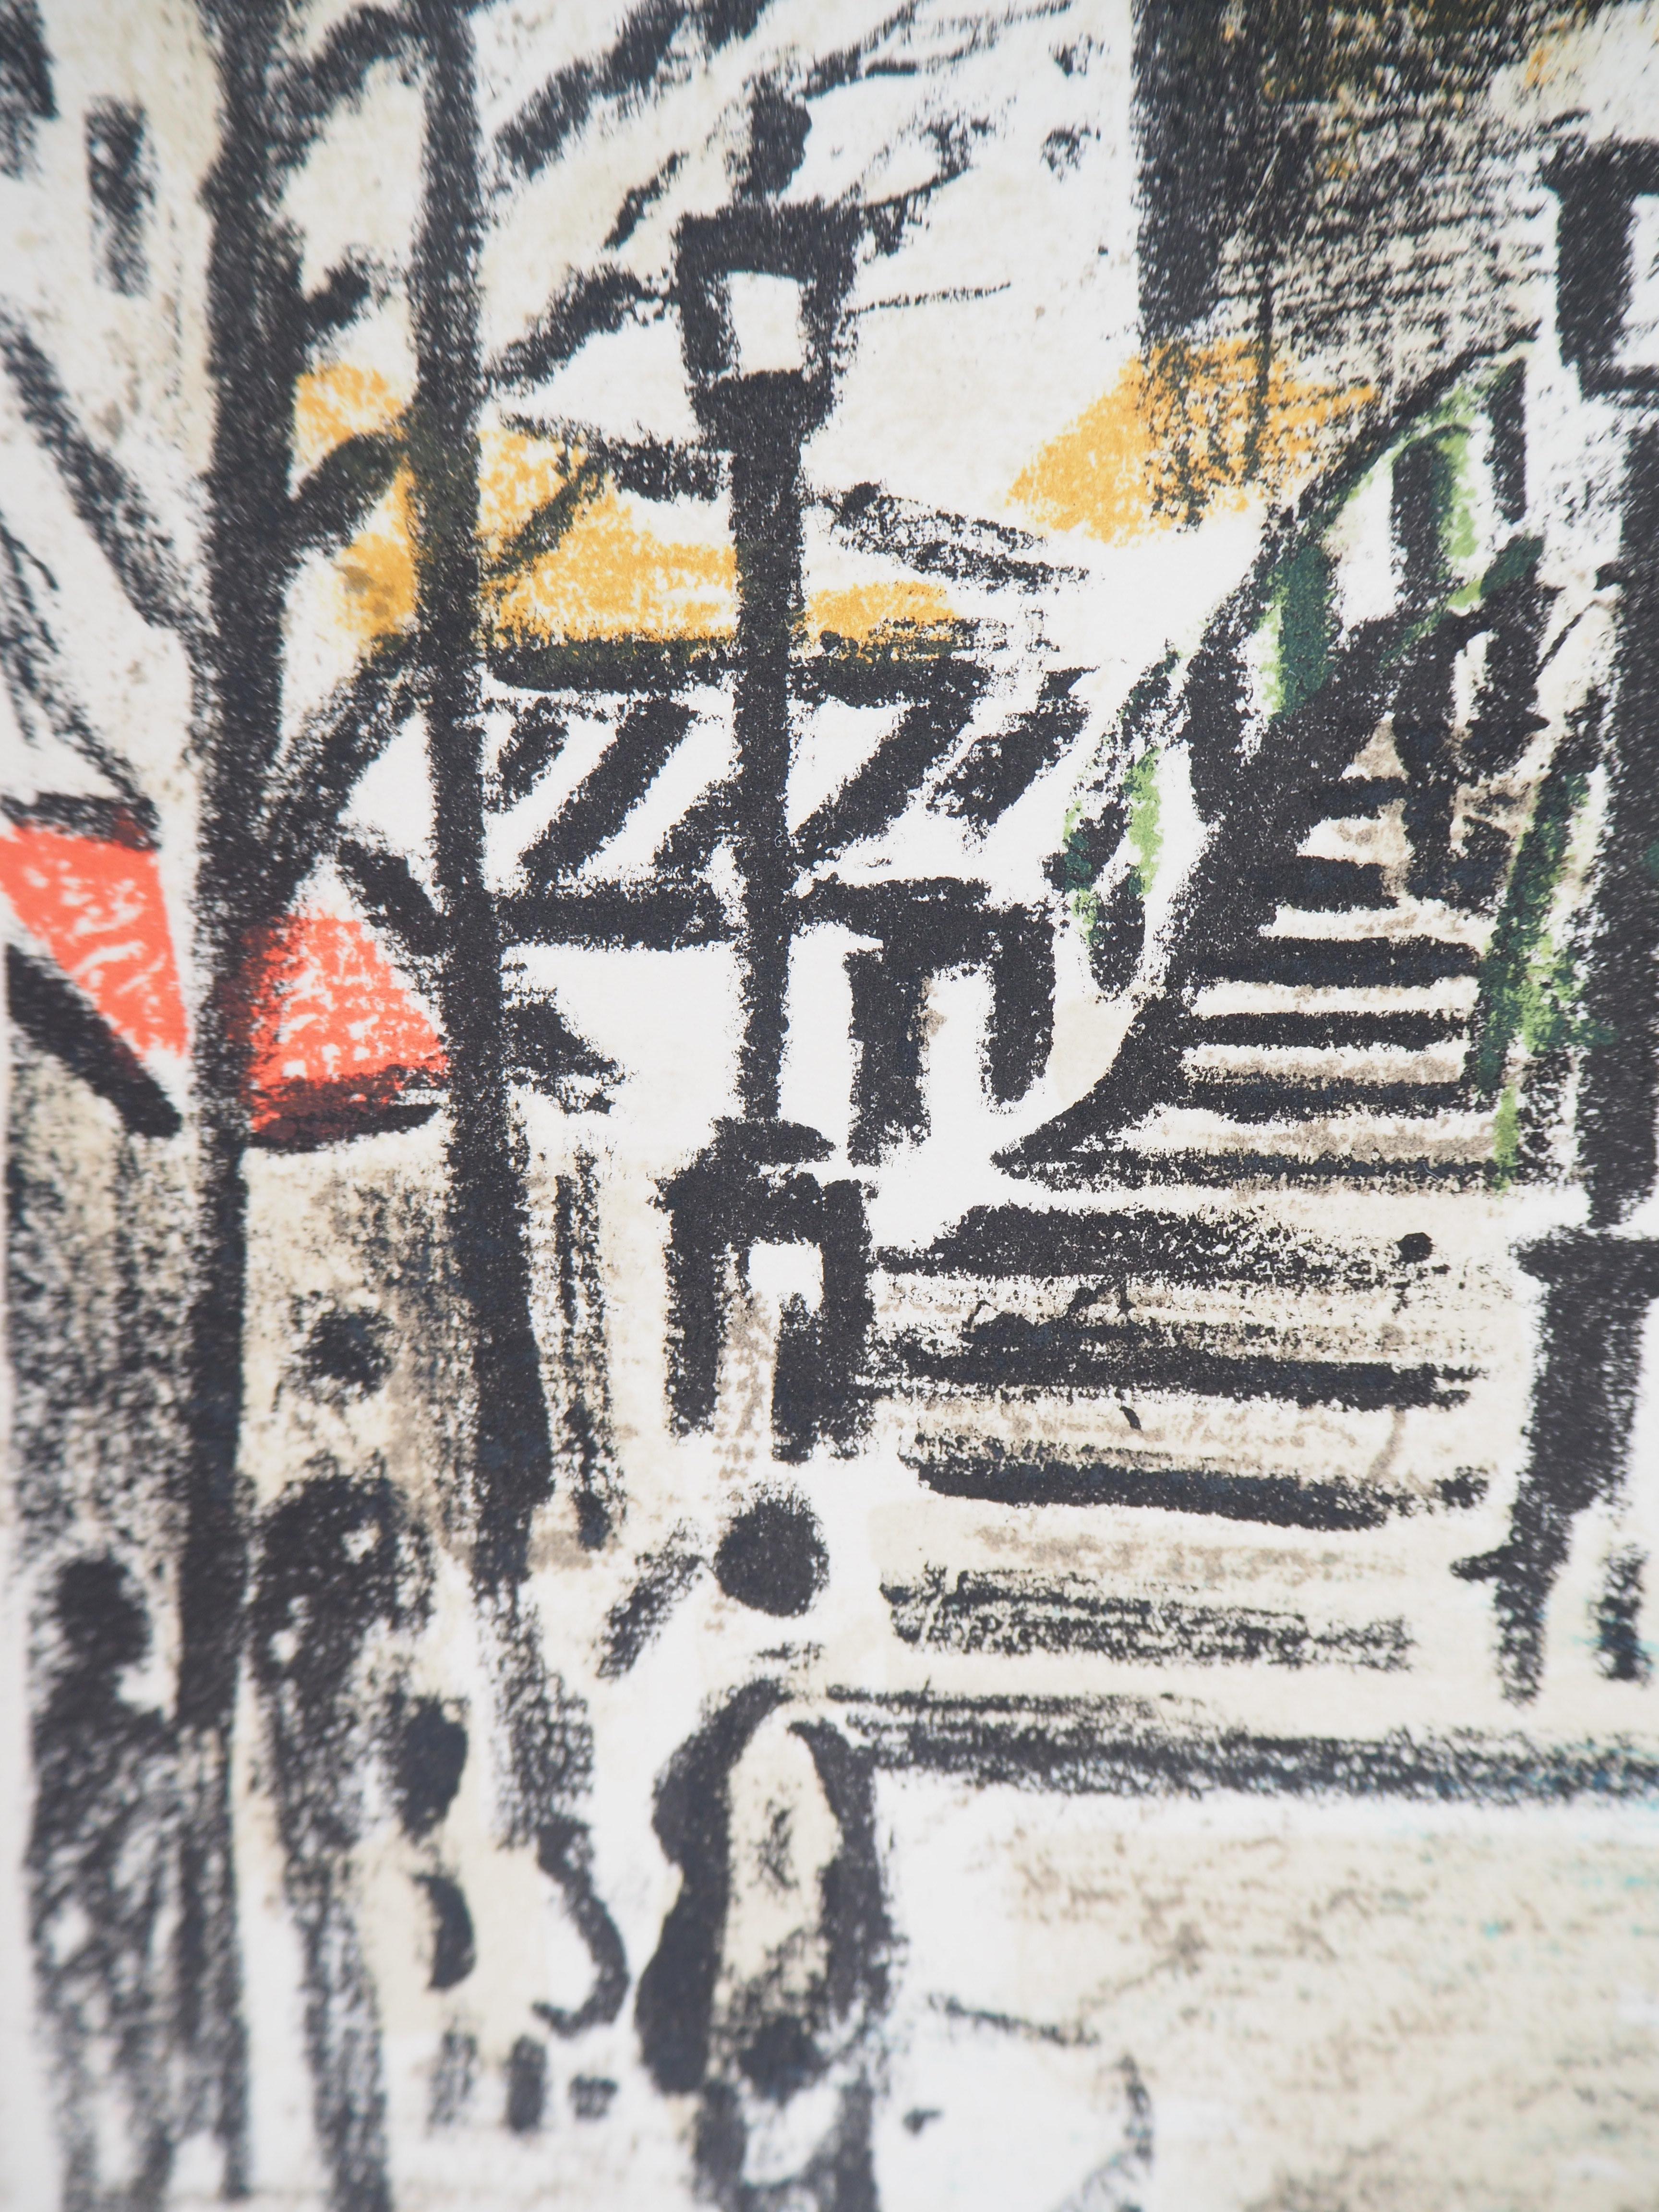 Robert SAVARY
Paris : Près du Canal Saint Martin, 1969

Lithographie originale (atelier Mourlot)
Signé à la main au crayon
Sur vélin d'Arches 37 x 29 cm (c. 16 x 12 in)

Excellent état